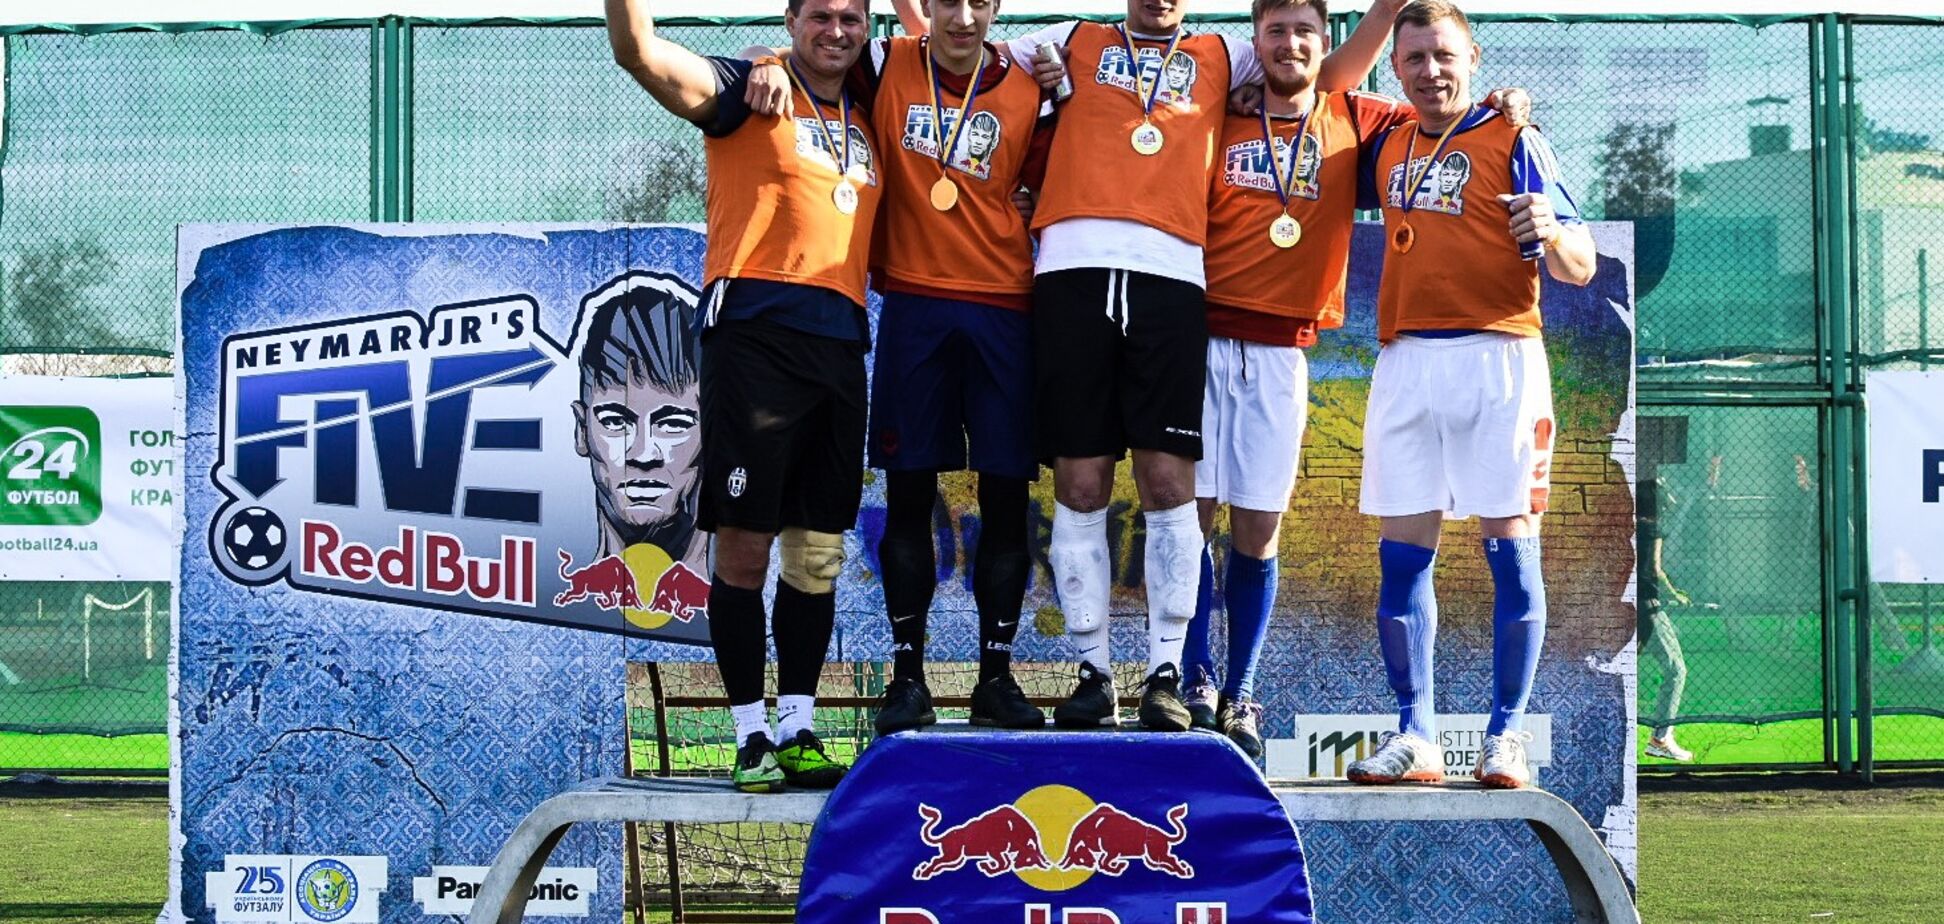 MG и Madrigal’ представят Одессу в Национальном Финале Neymar Jr's Five